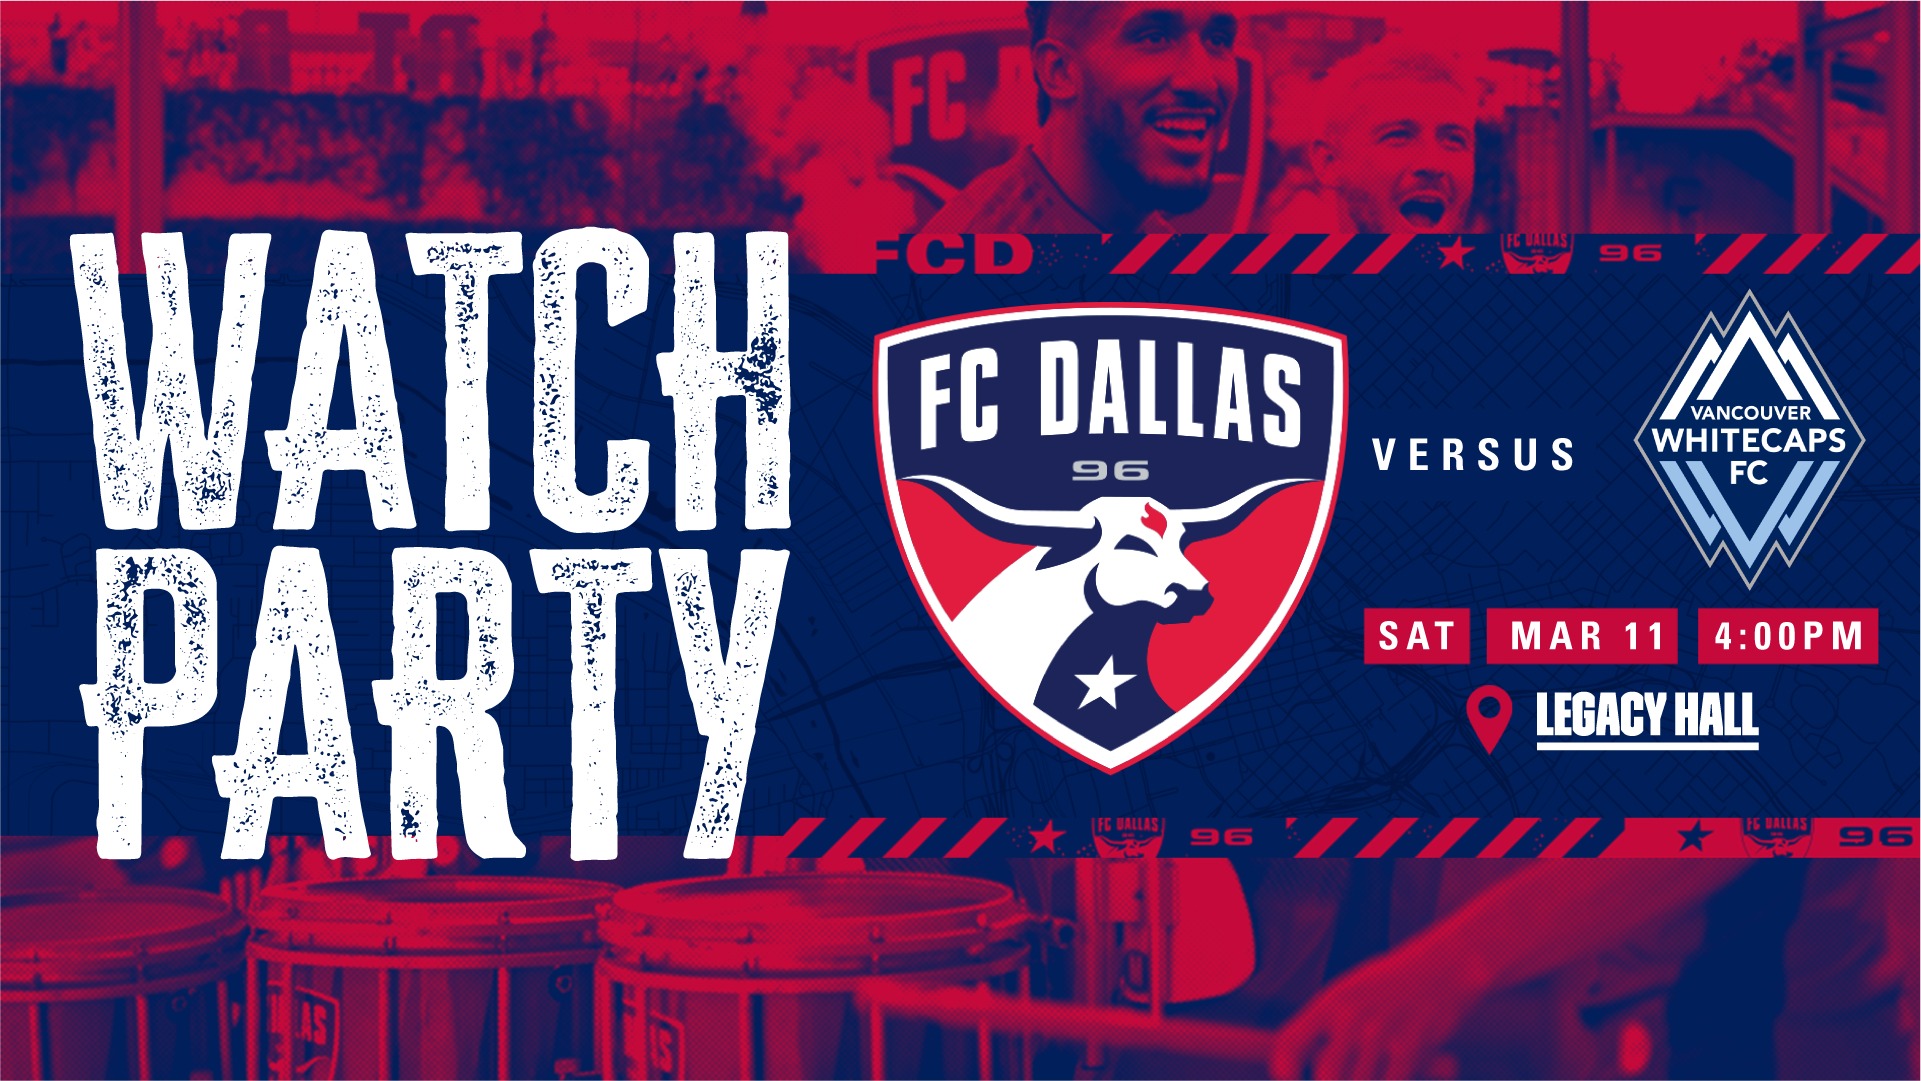 FC Dallas VS Vancouver Watch Party